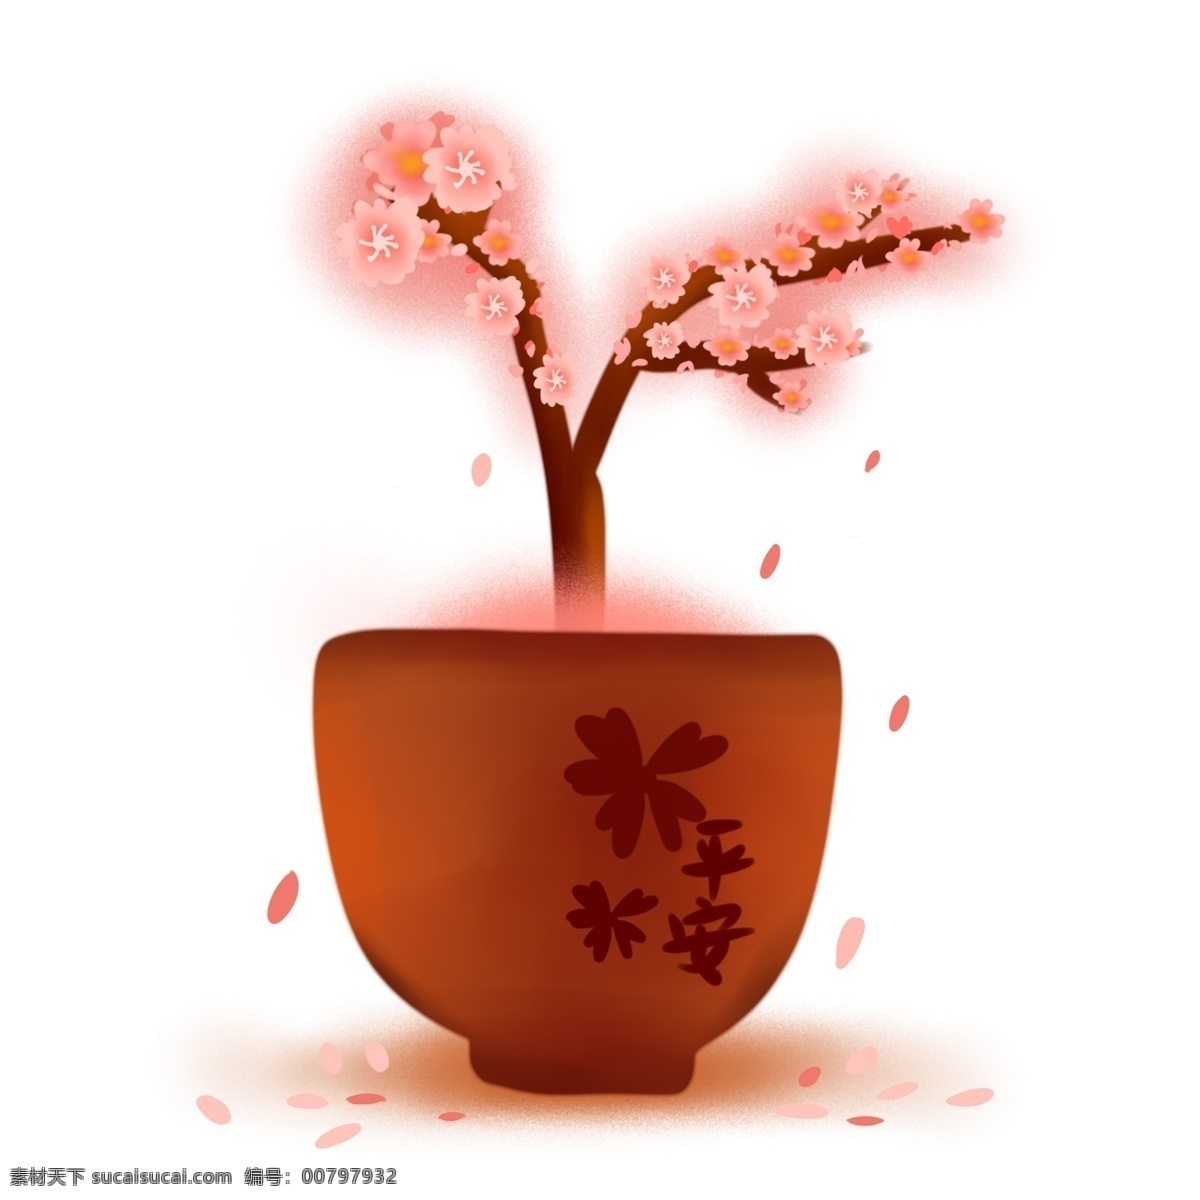 樱花 树苗 盆栽 日本 日式 樱花季 粉色 祈福 平安 花语 纯洁 古典 三月 春天